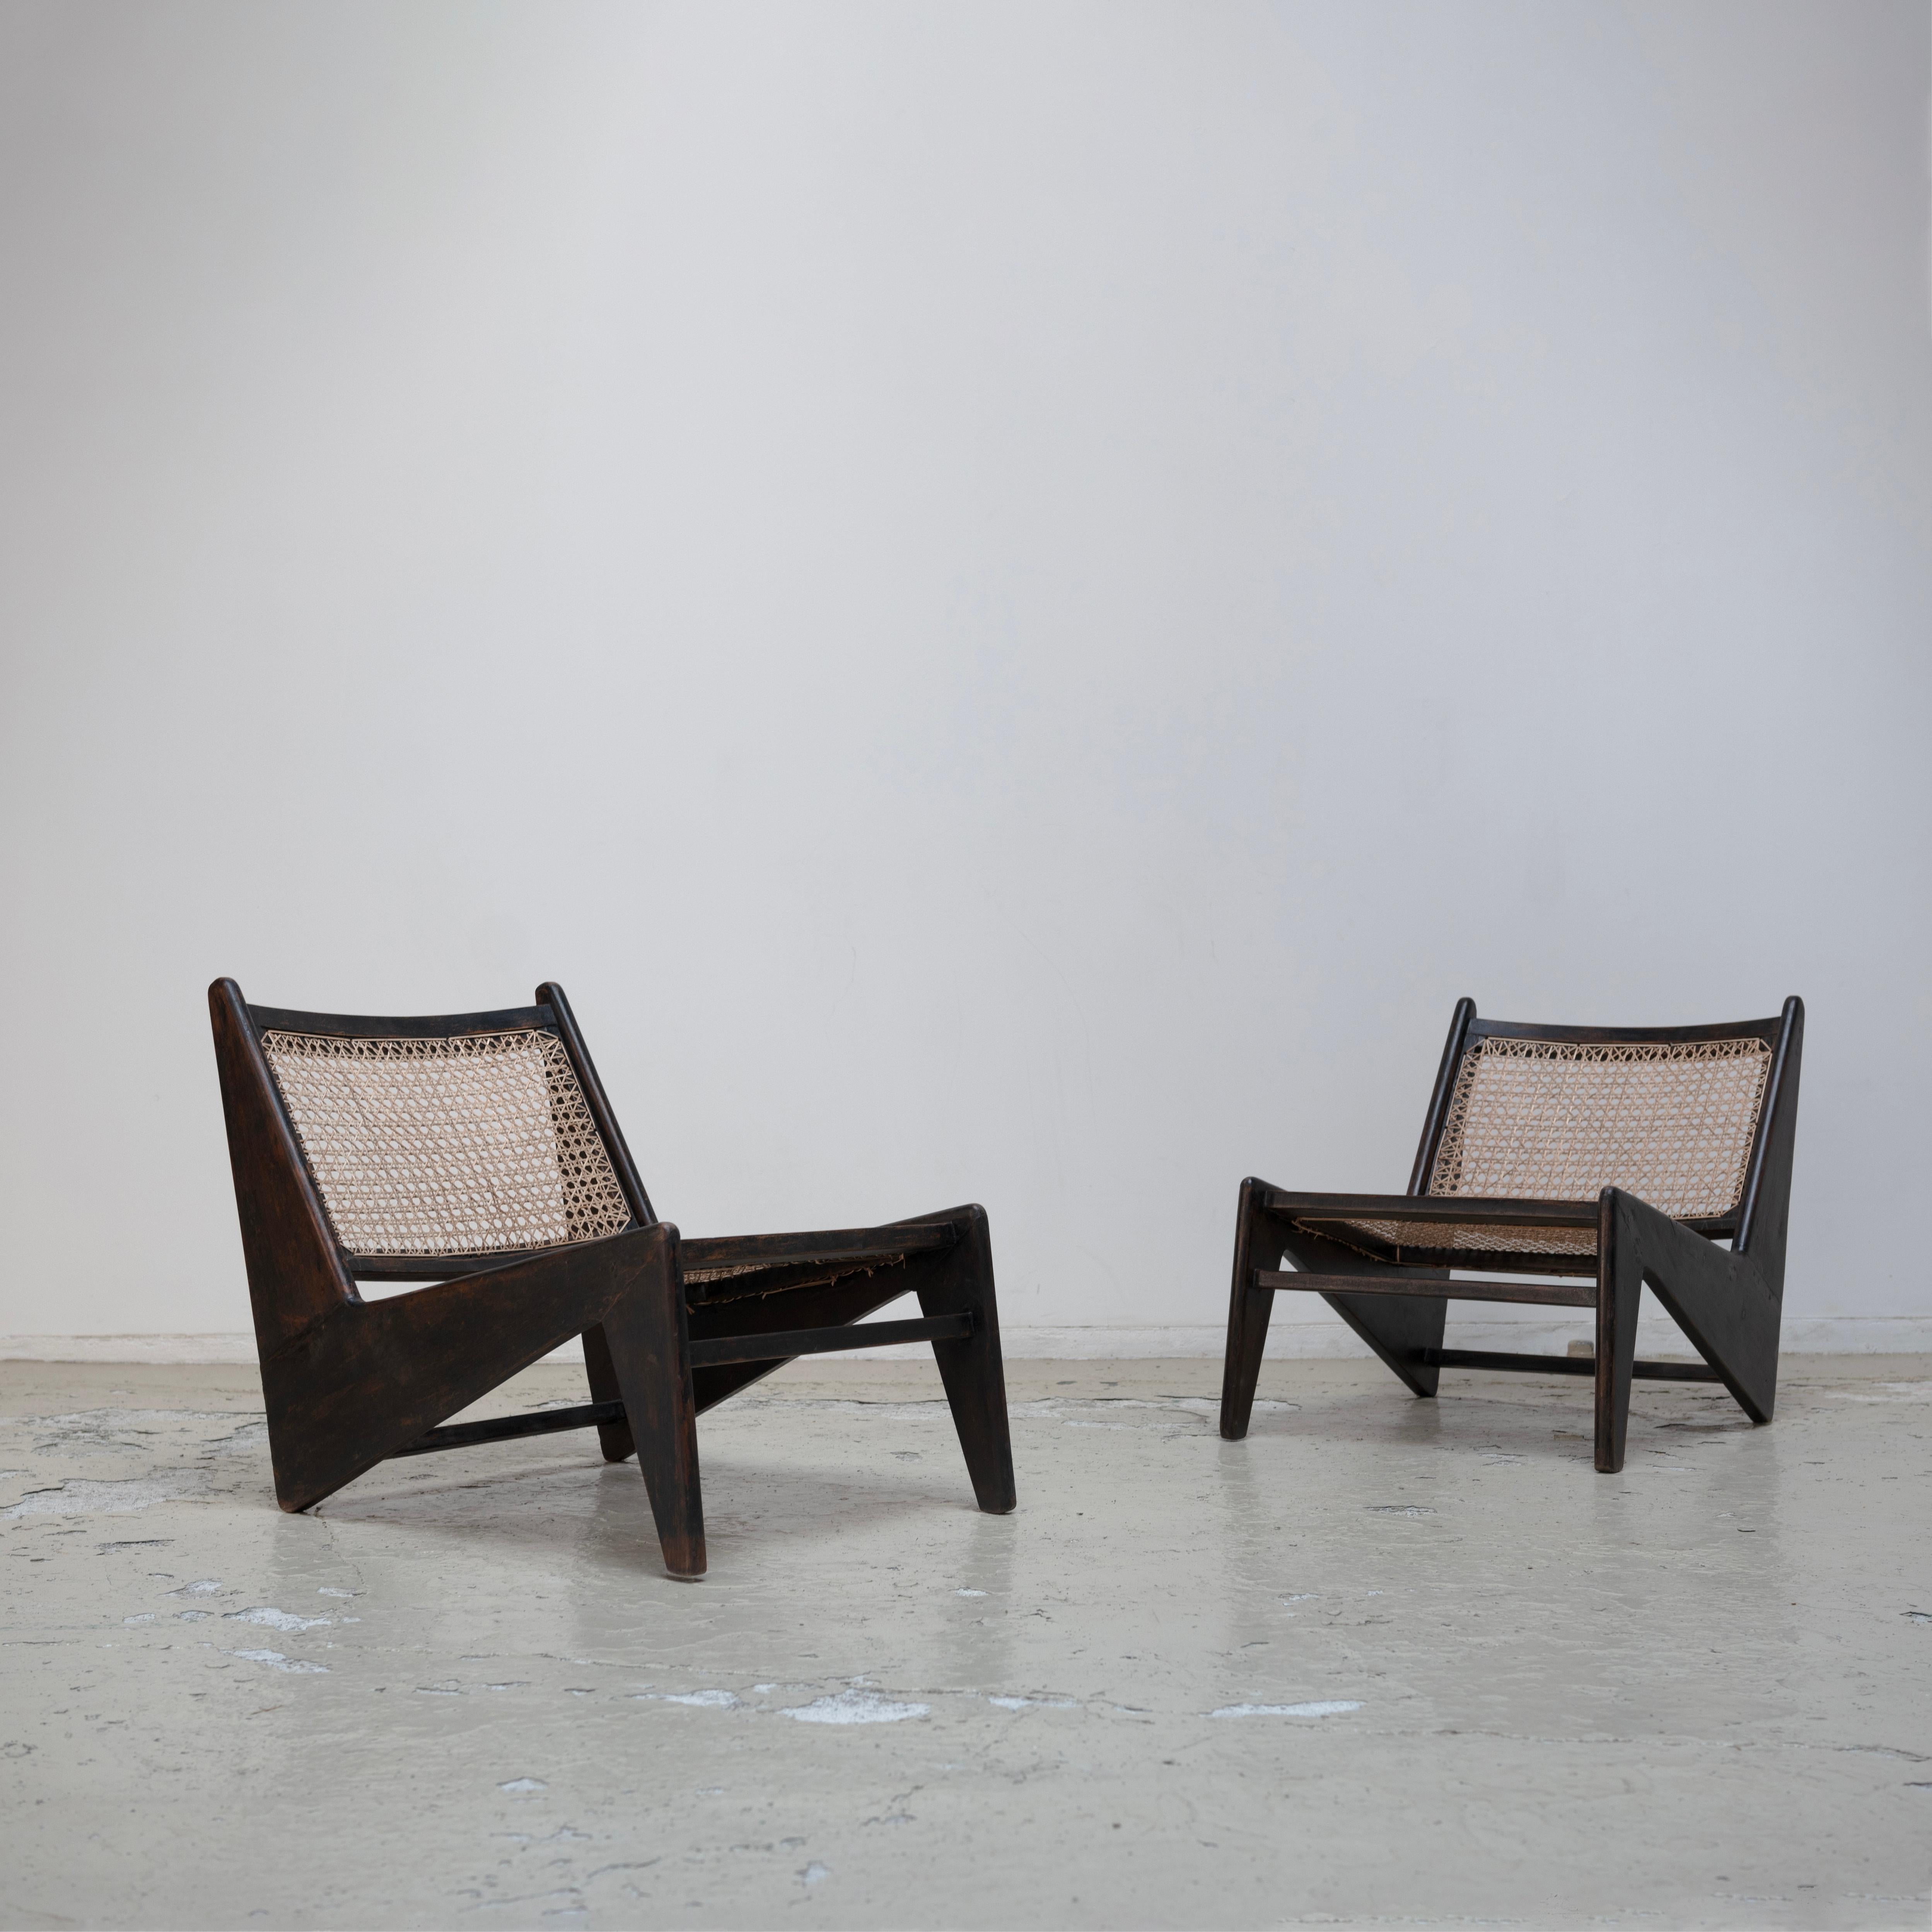 Pierre Jeanneret , Schwarzer Känguru-Stuhl für Chandigarh, Teakholz , 1950er Jahre
Das ist sehr selten.
Der Preis für einen Satz von 2 Stühlen.